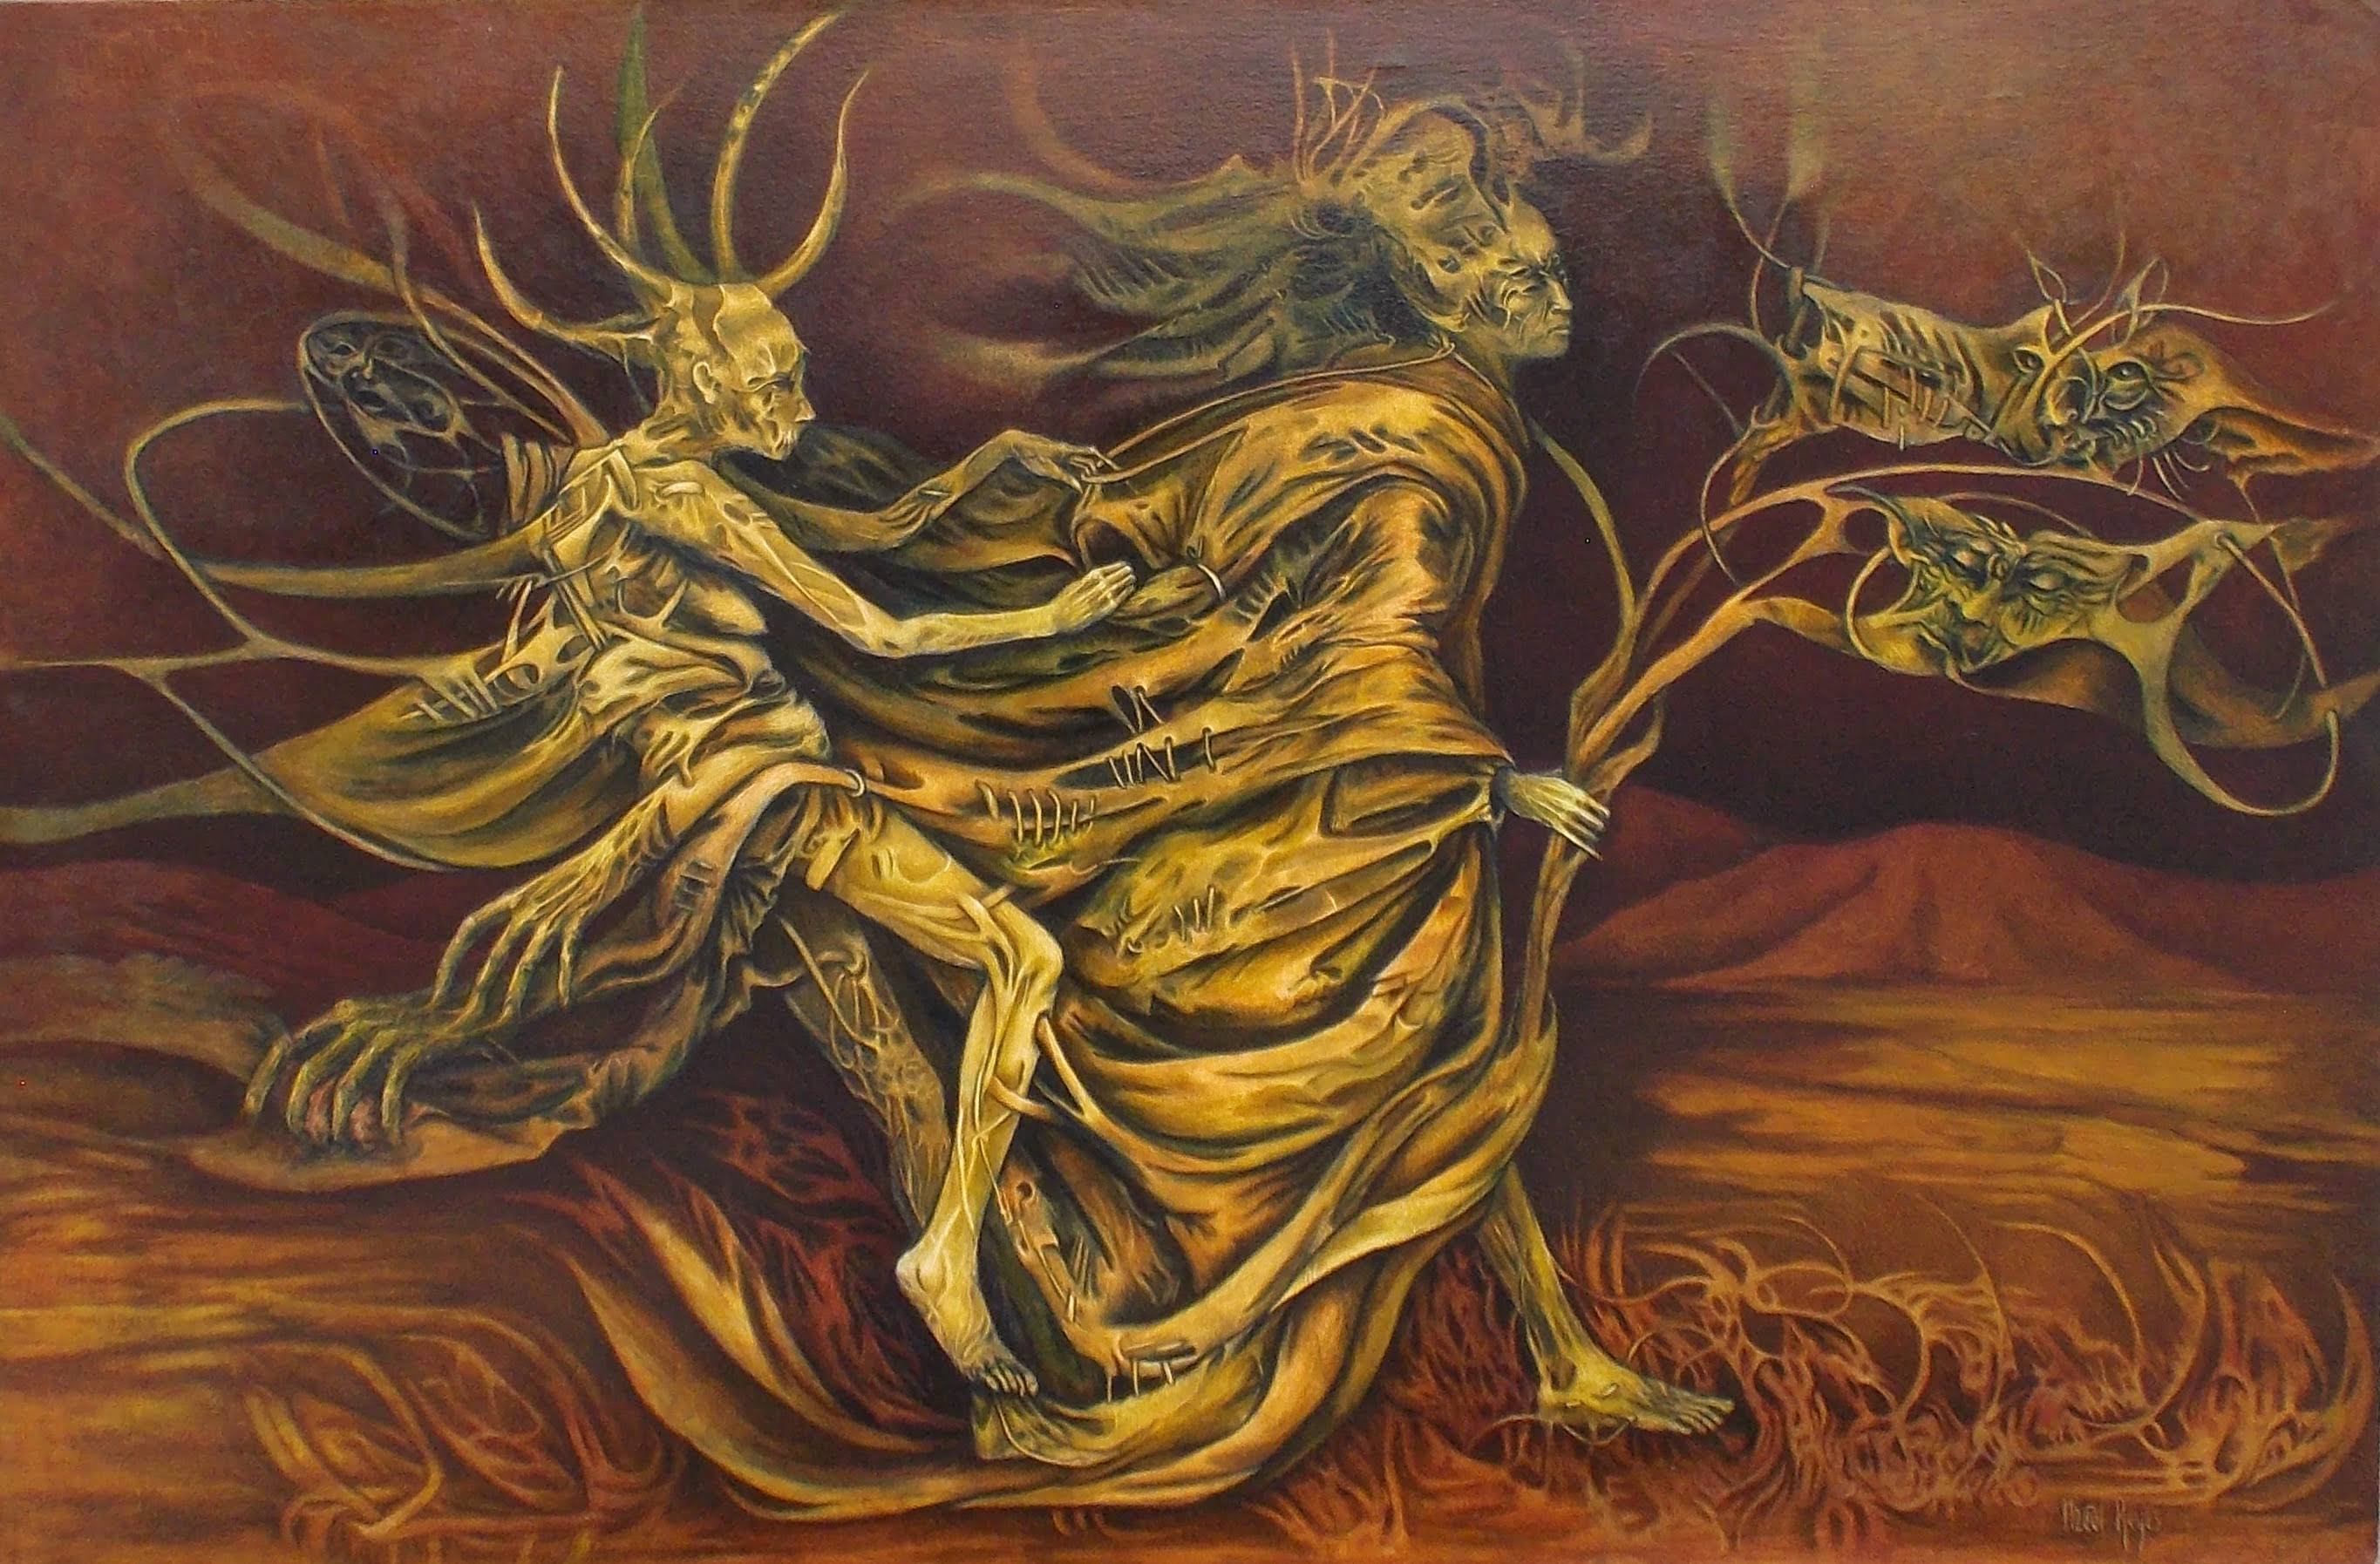 Título: El andar de la bruja 
Técnica: óleo sobre lona
Medidas: 80.5 x 120.5 cm
Autora: Itzeel Reyes